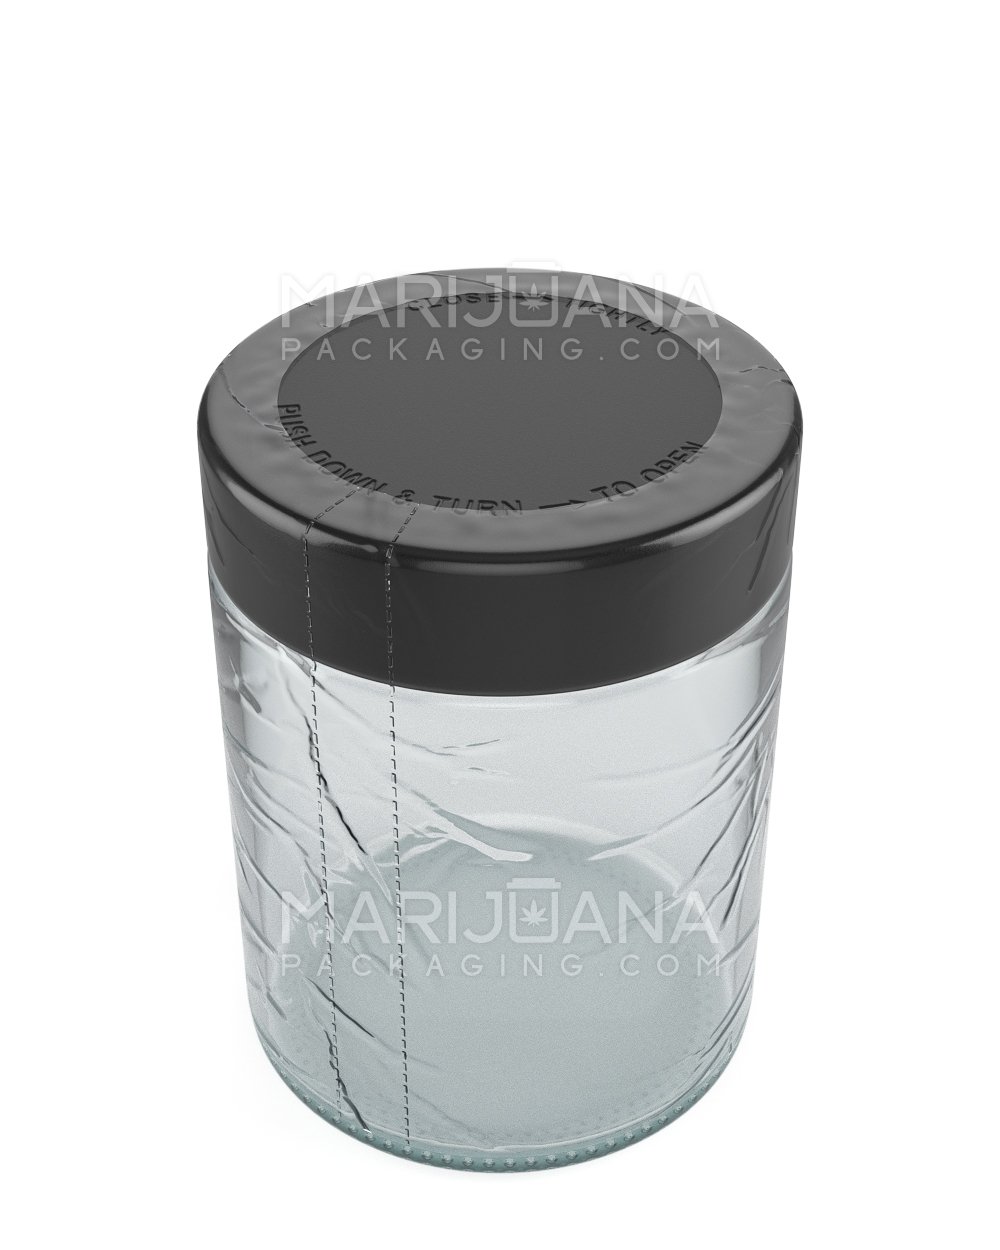 Tamper Evident | Heat Shrink Bands for Jars | 18oz - Clear Plastic - 1000 Count - 2